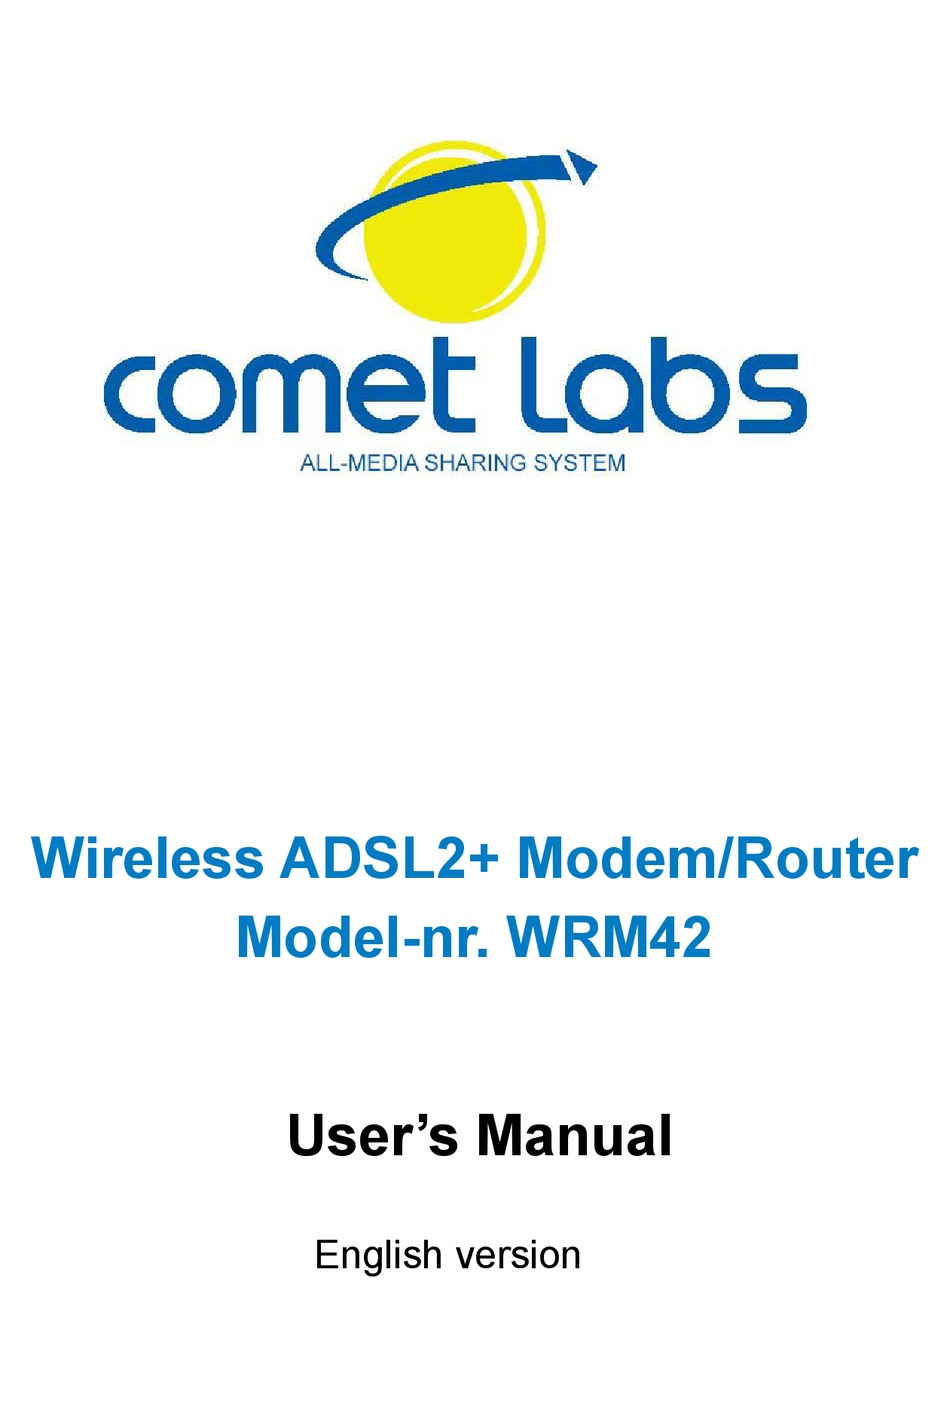 COMET LABS WRM42 USER MANUAL Pdf Download | ManualsLib